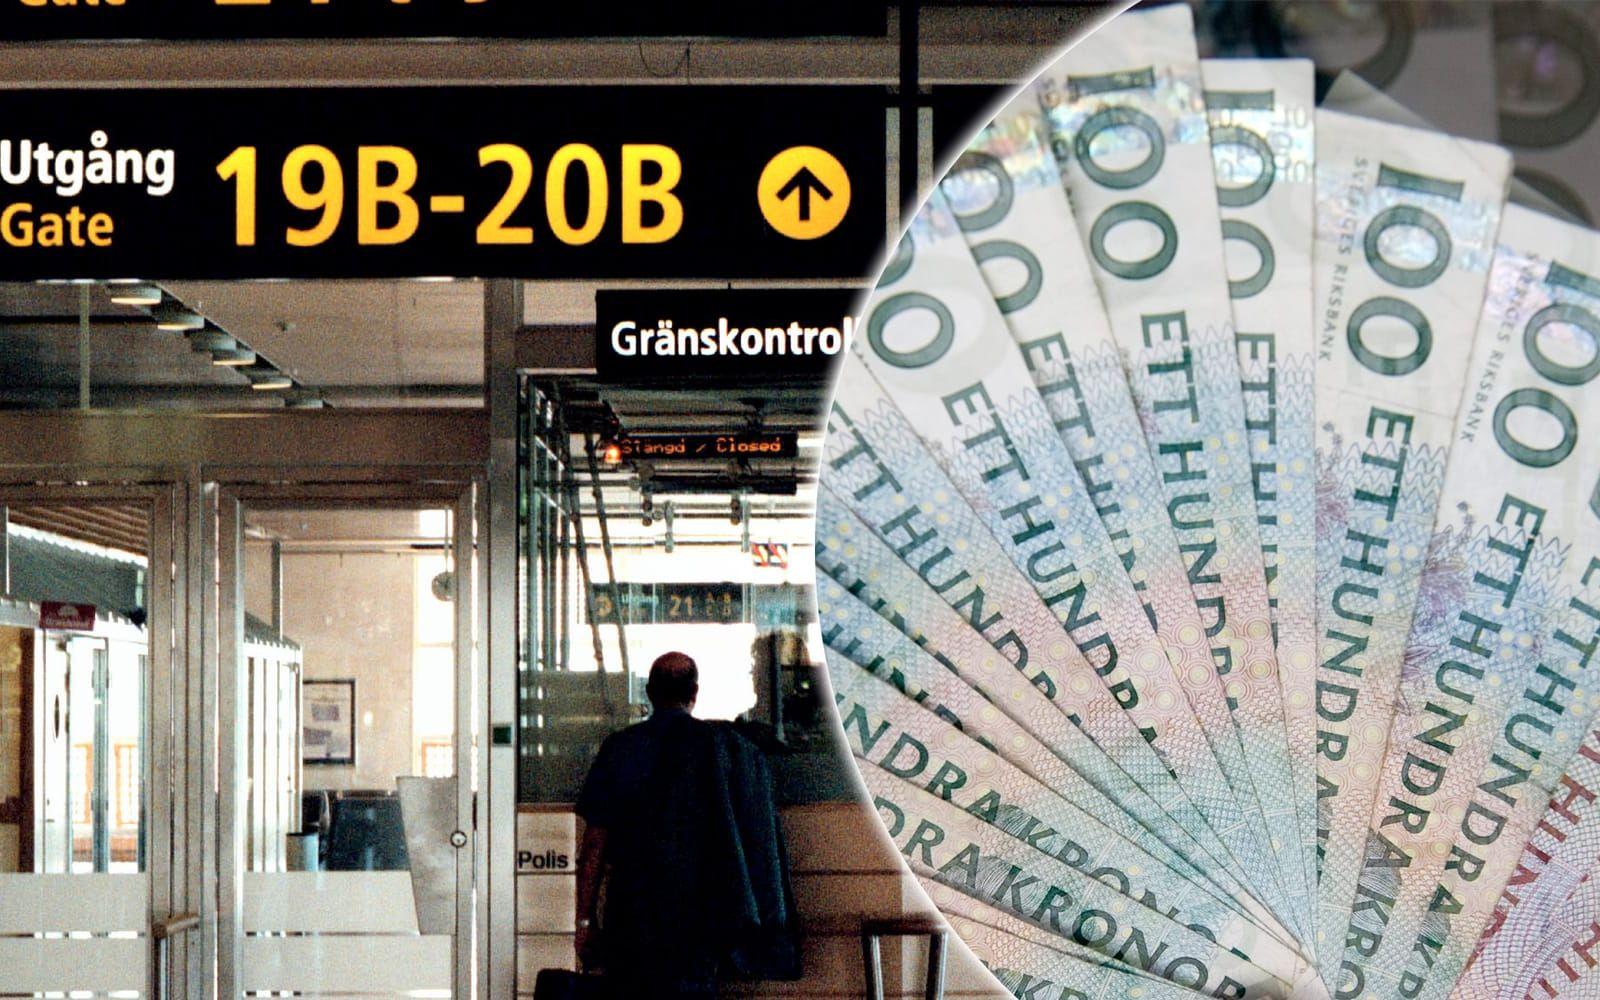 Operationen pågick under en vecka i mars. På Sveriges internationella flygplatser beslagtogs över 600 000 kronor i kontakter och värdeföremål till ett uppskattat värde av omkring 400 000 kronor. FOTO: Stefan Berg/TT
